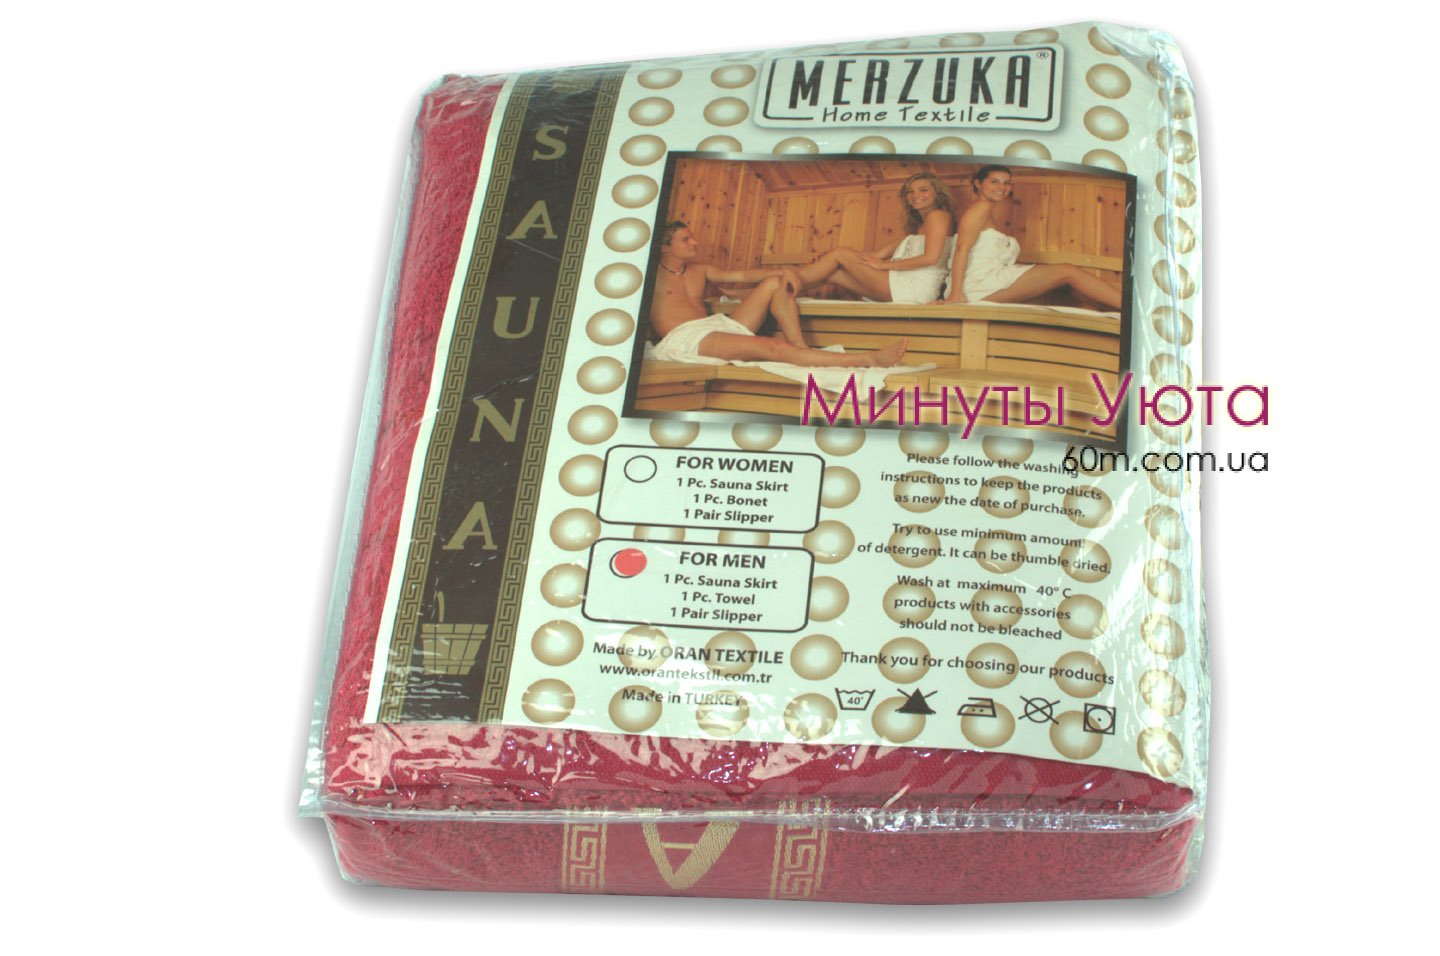 Женский хлопковий набор для сауны из 3-х предметов Merzuka